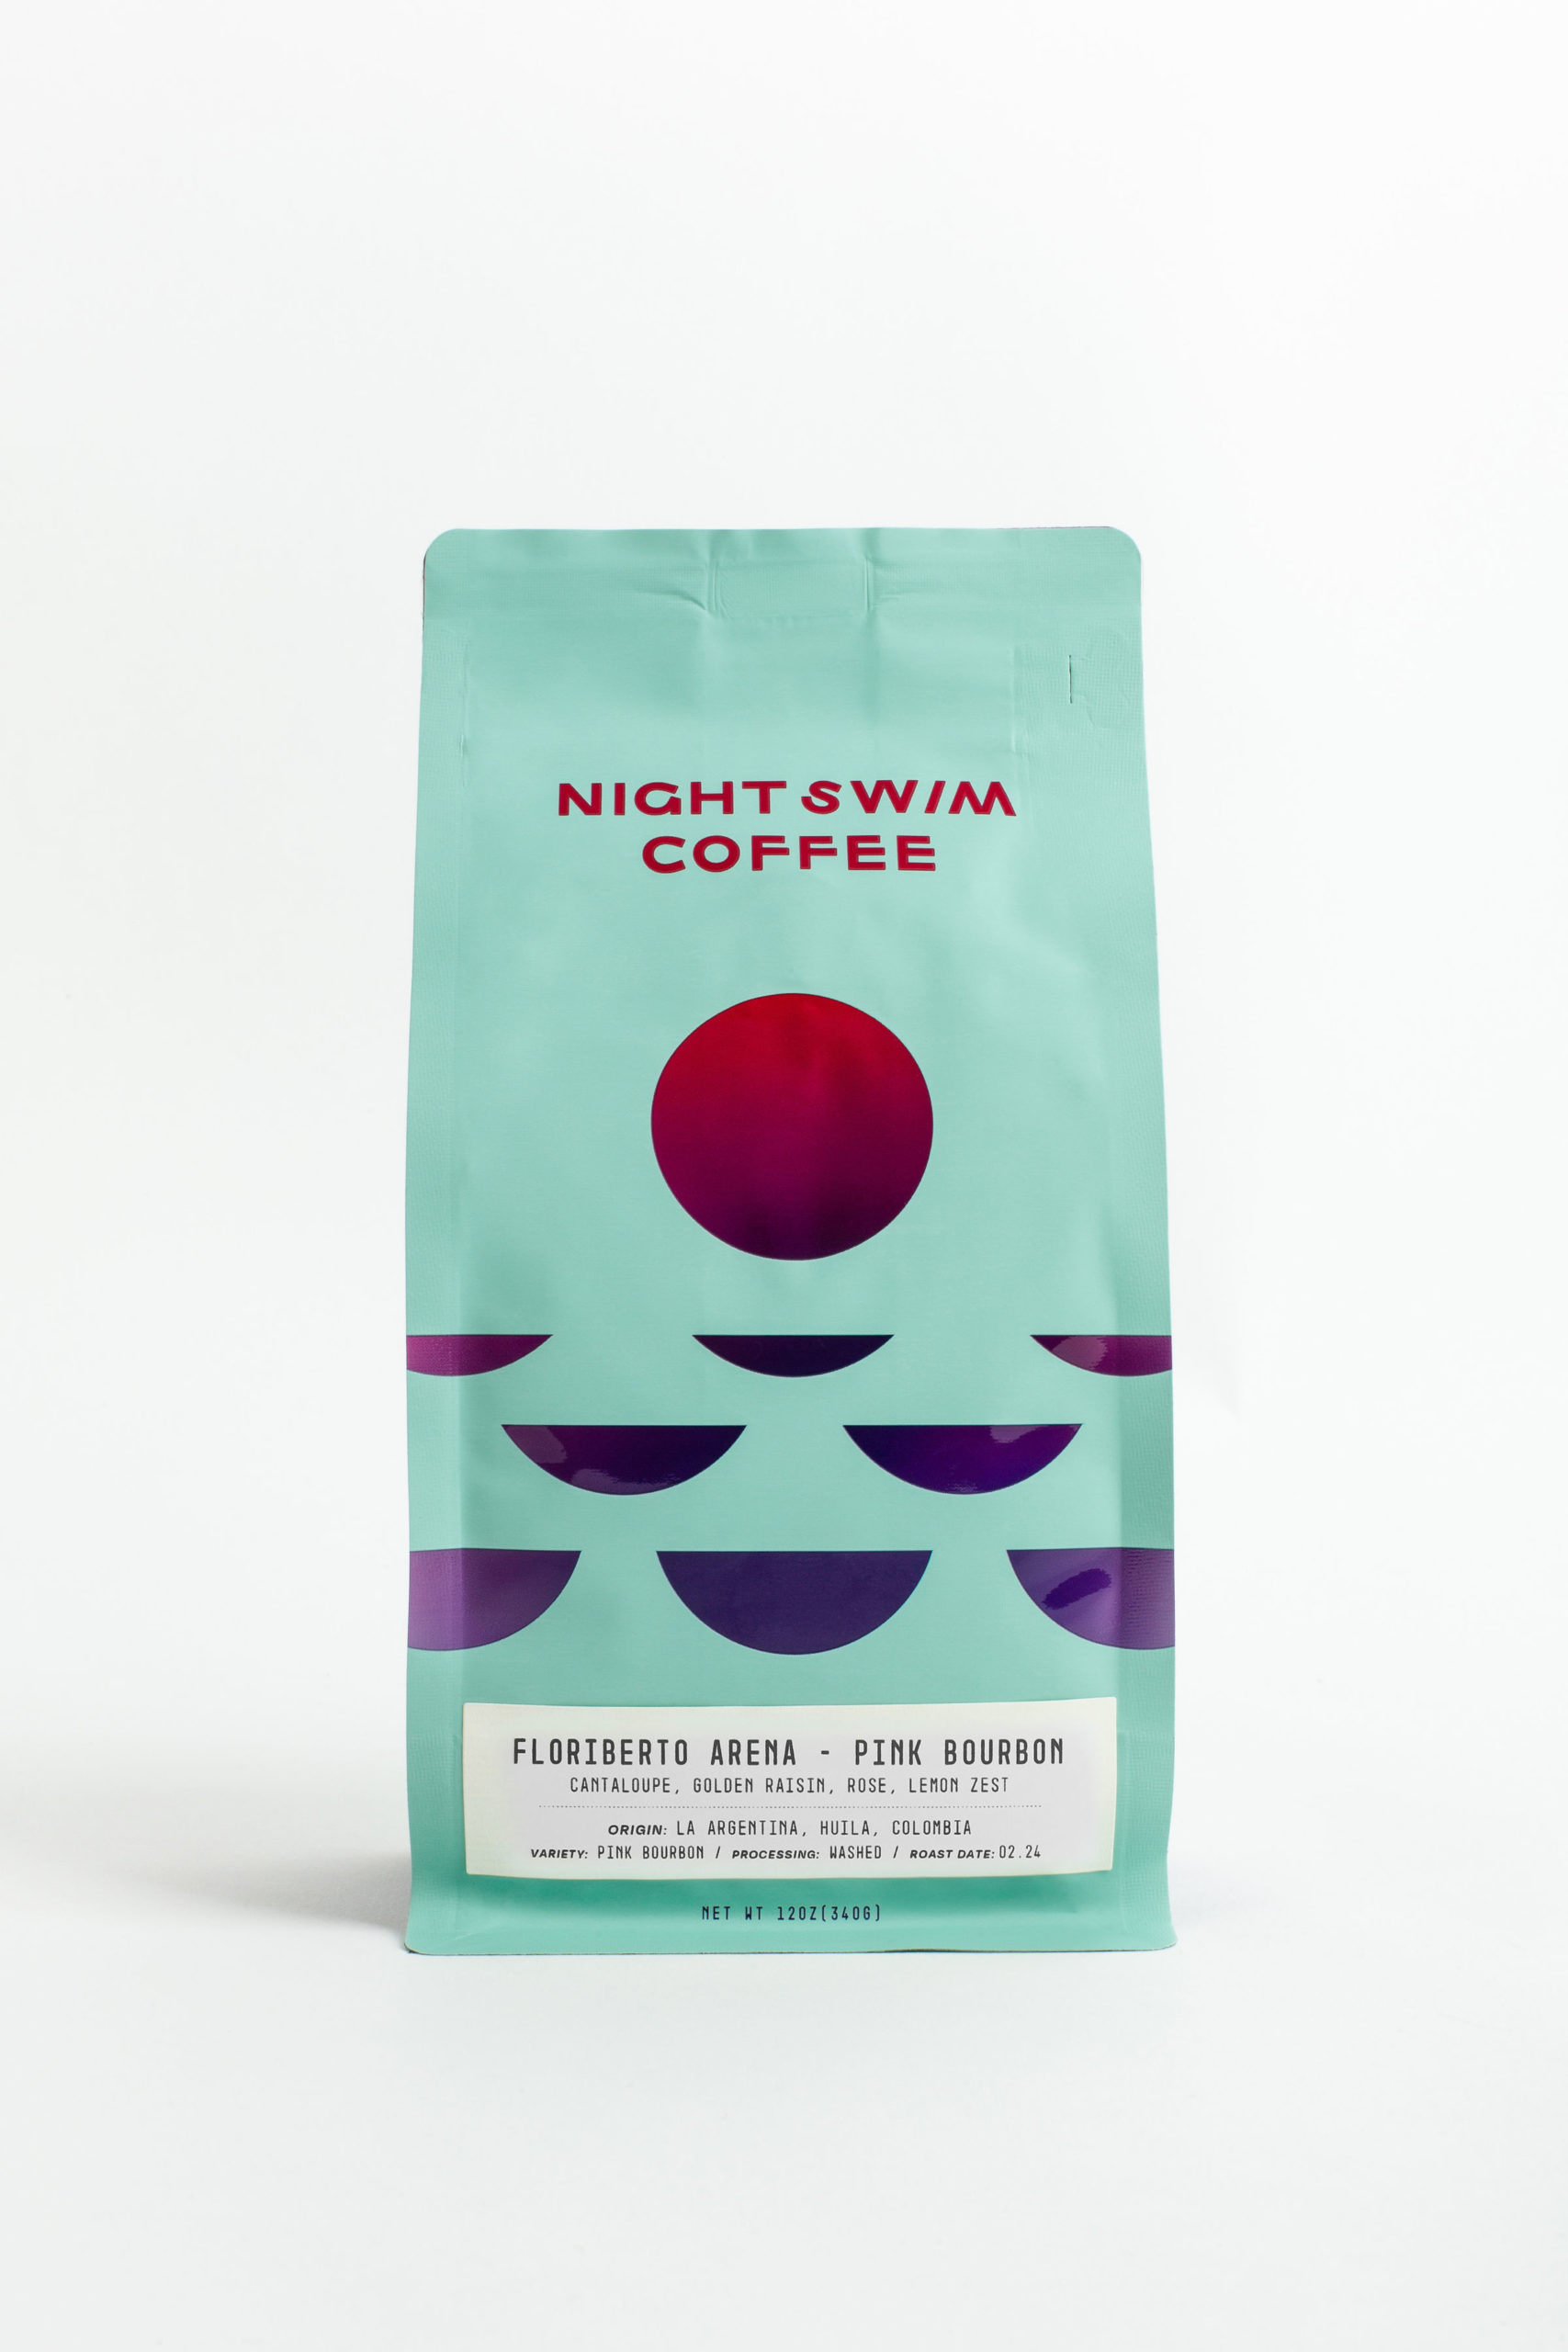 night swim coffee design sprudge 6